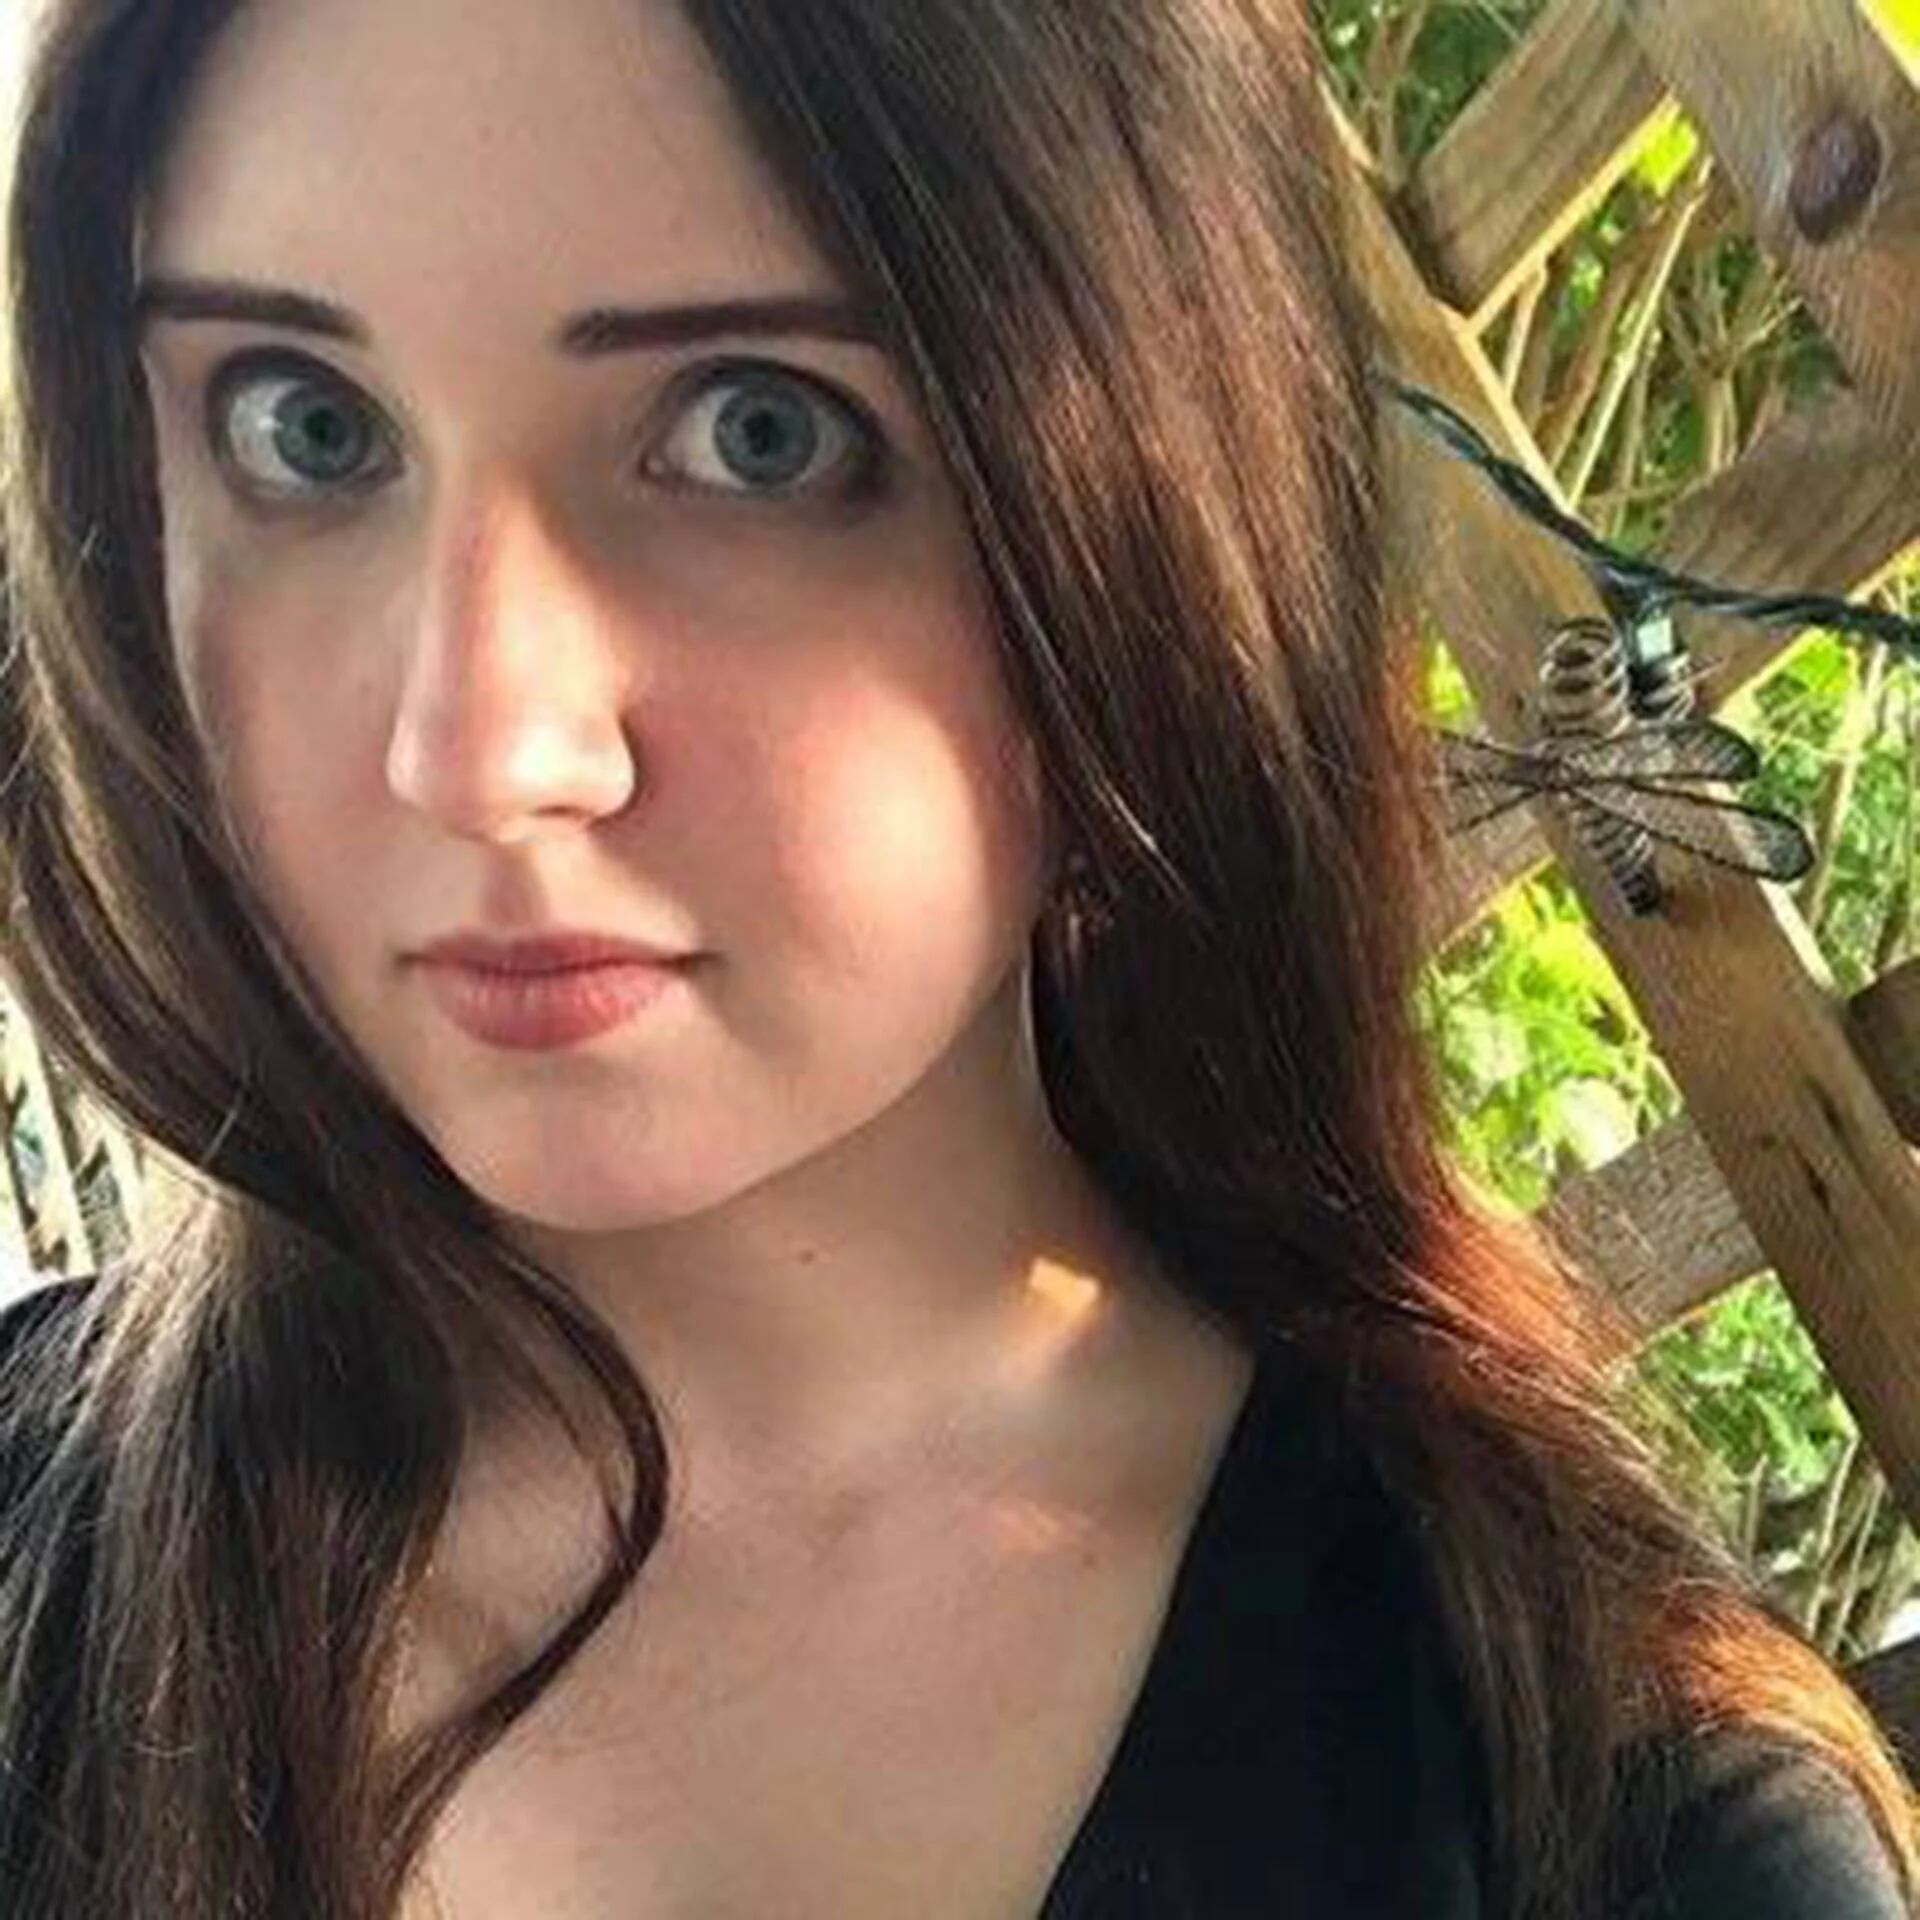 Katie McHugh, la periodista despedida de Breitbart News por sus comentarios antimusulmanes (Twitter)